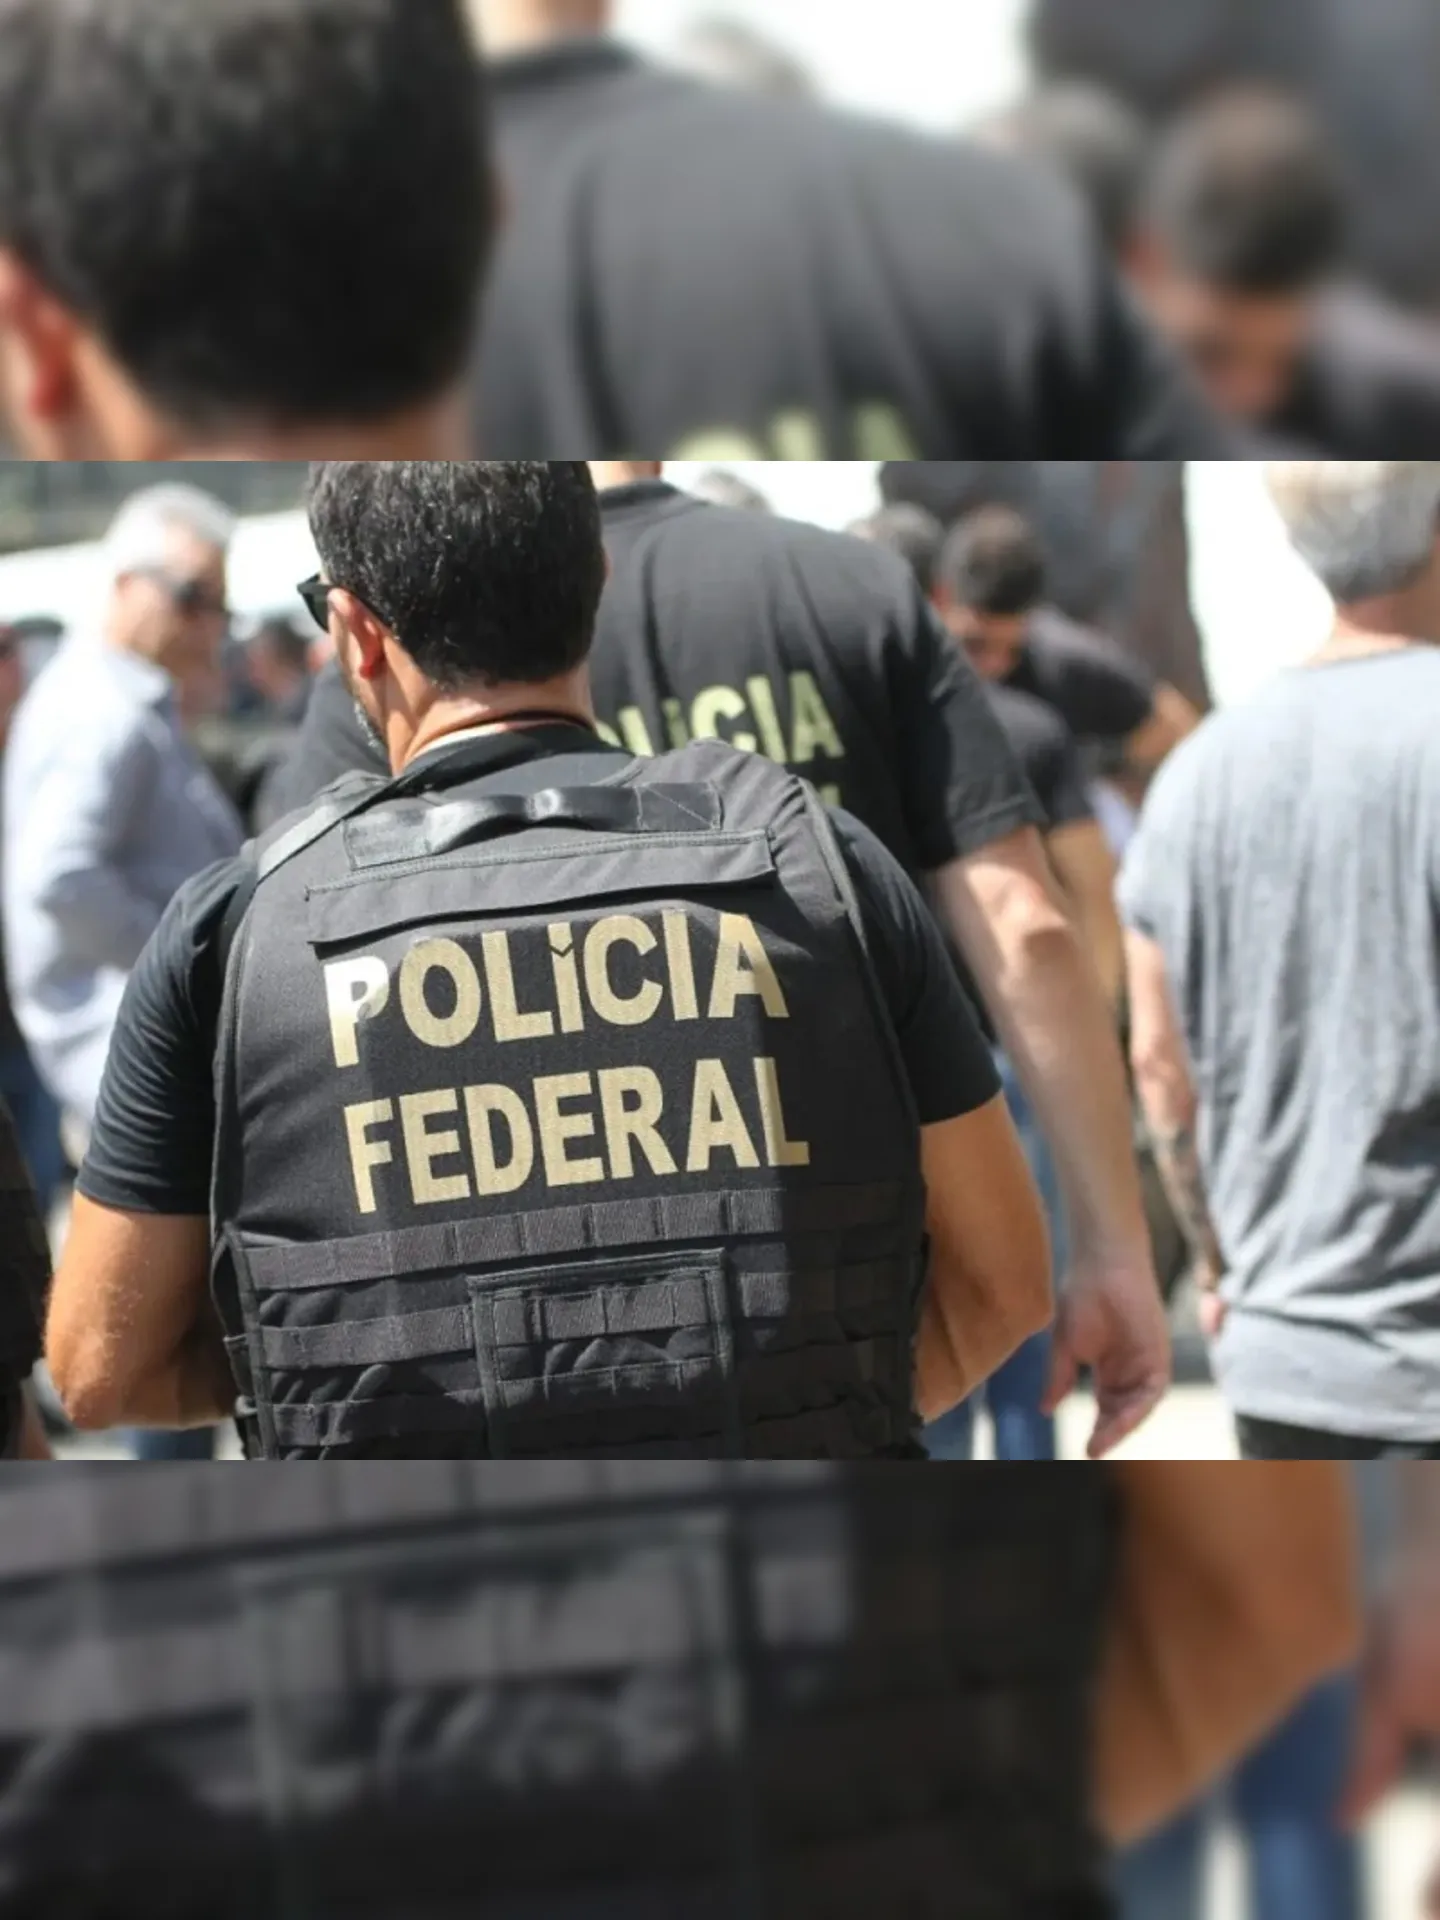 O preso foi encaminhado à Superintendência da PF no Rio de Janeiro, na Praça Mauá